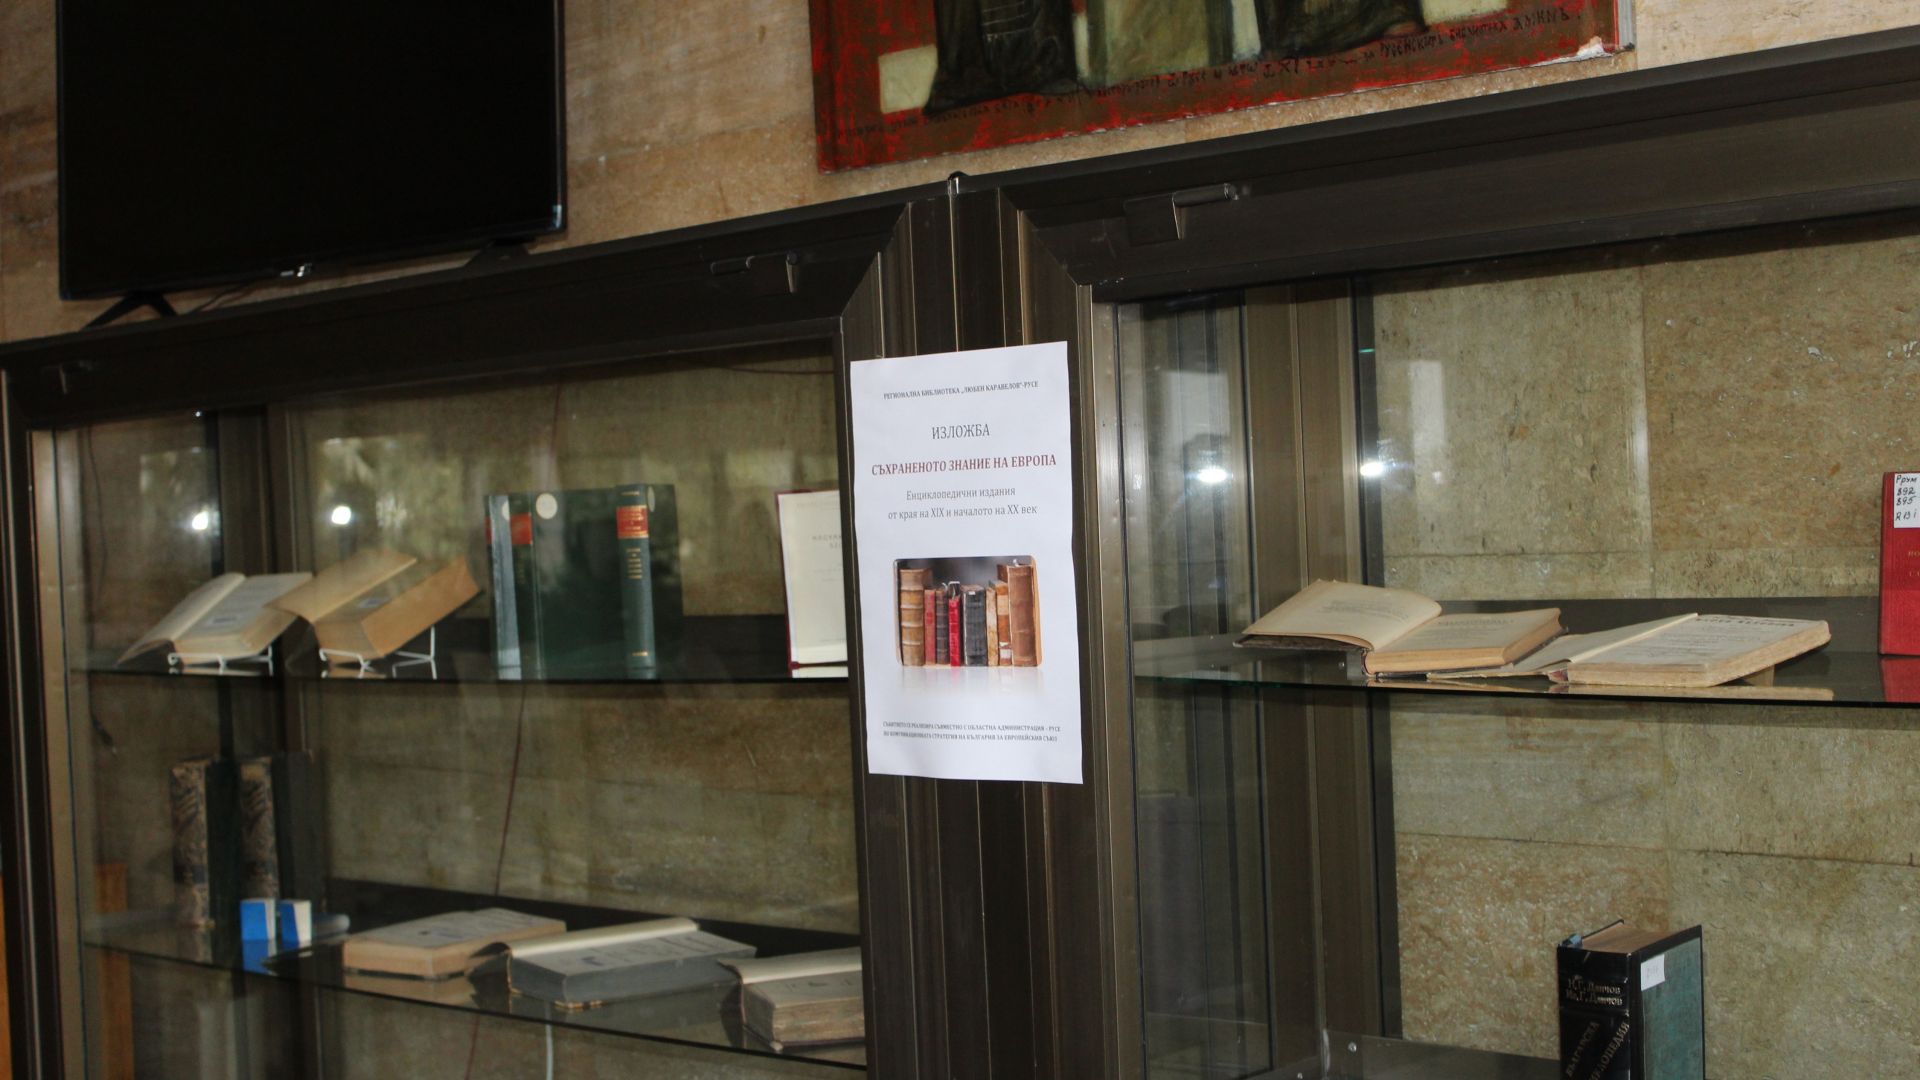 Изложбата Съхраненото знание на Европа е подредена в Регионалната библиотека